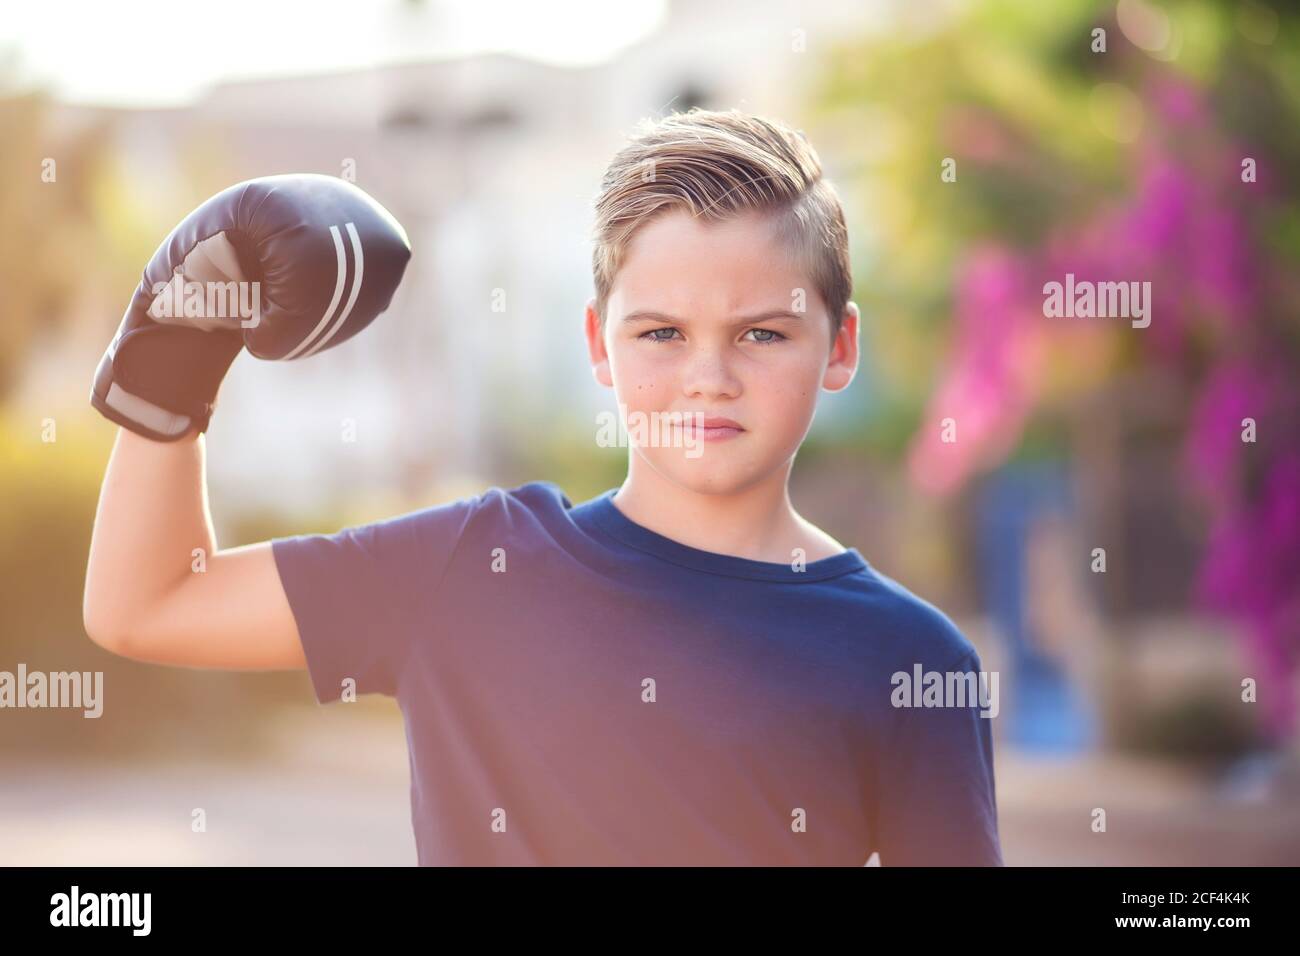 Enfant garçon avec des gants de boxe montrant un extérieur résistant. Concept de l'enfance, des loisirs et de la santé Banque D'Images